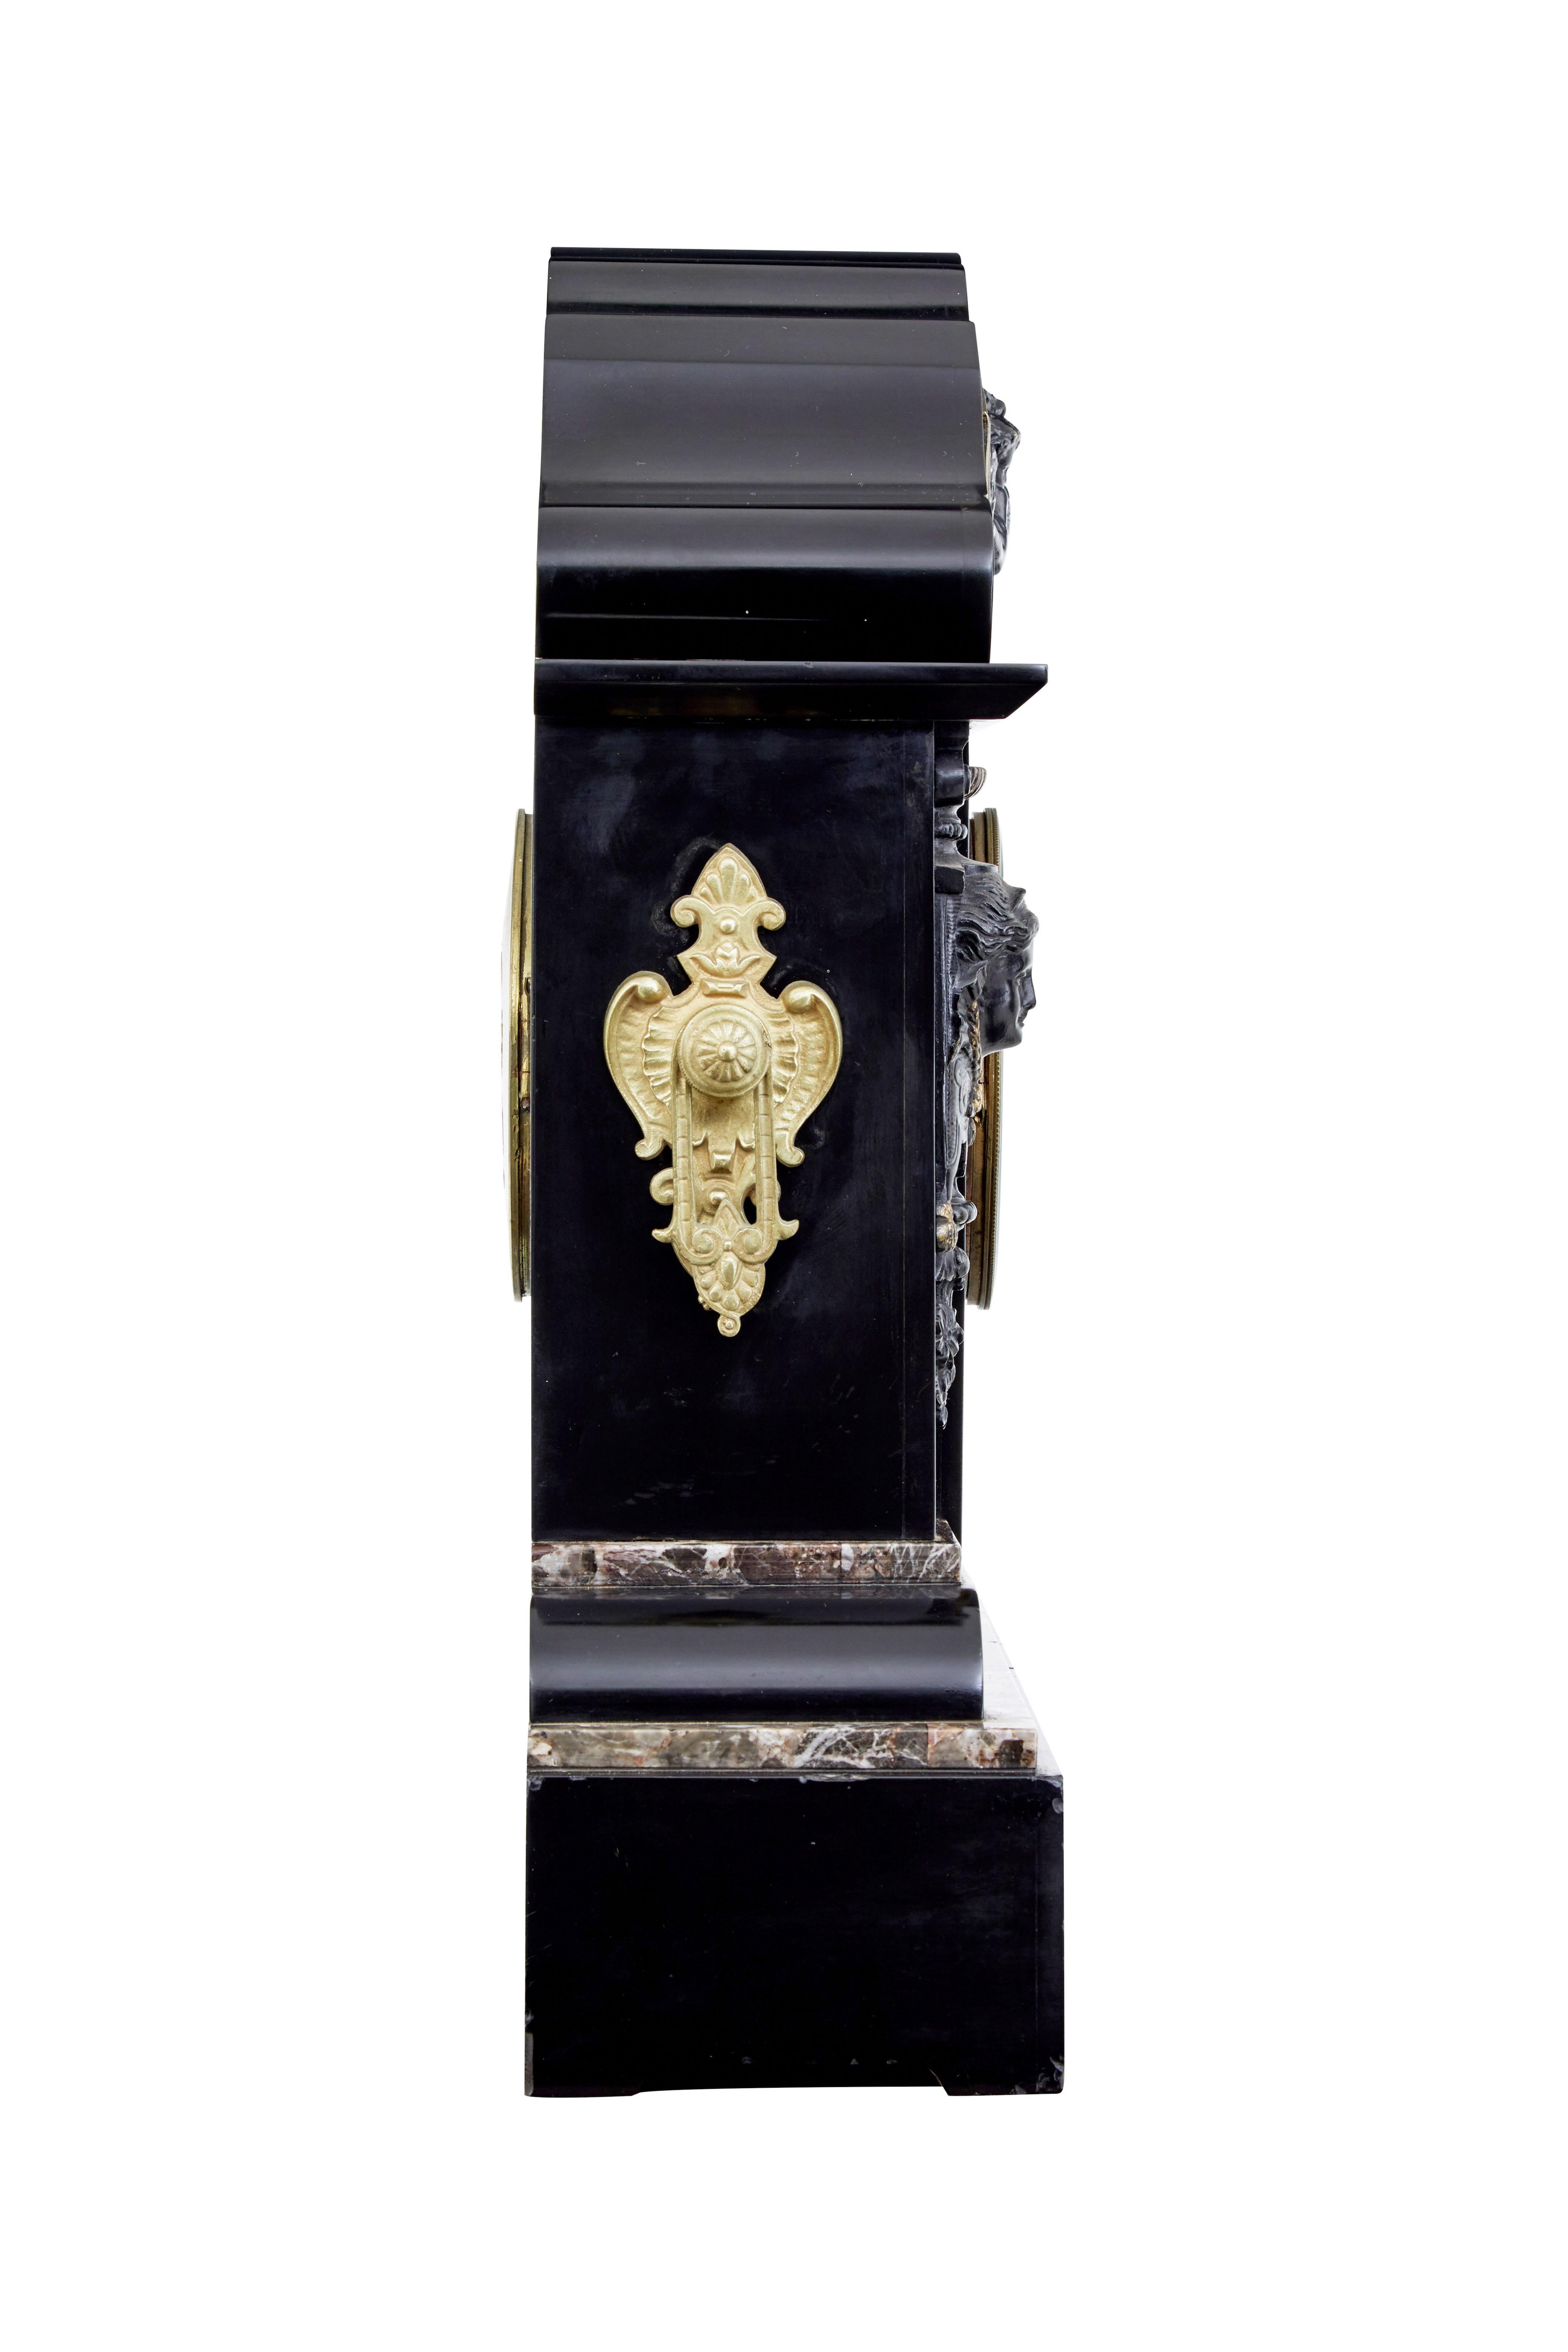 Haute horloge de cheminée victorienne en marbre noir incrusté circa 1870.

Pendule de cheminée de grande qualité et de grandes proportions, datant de la période du règne de Victoria où il était de bon ton de commémorer la mort du prix Albert. 